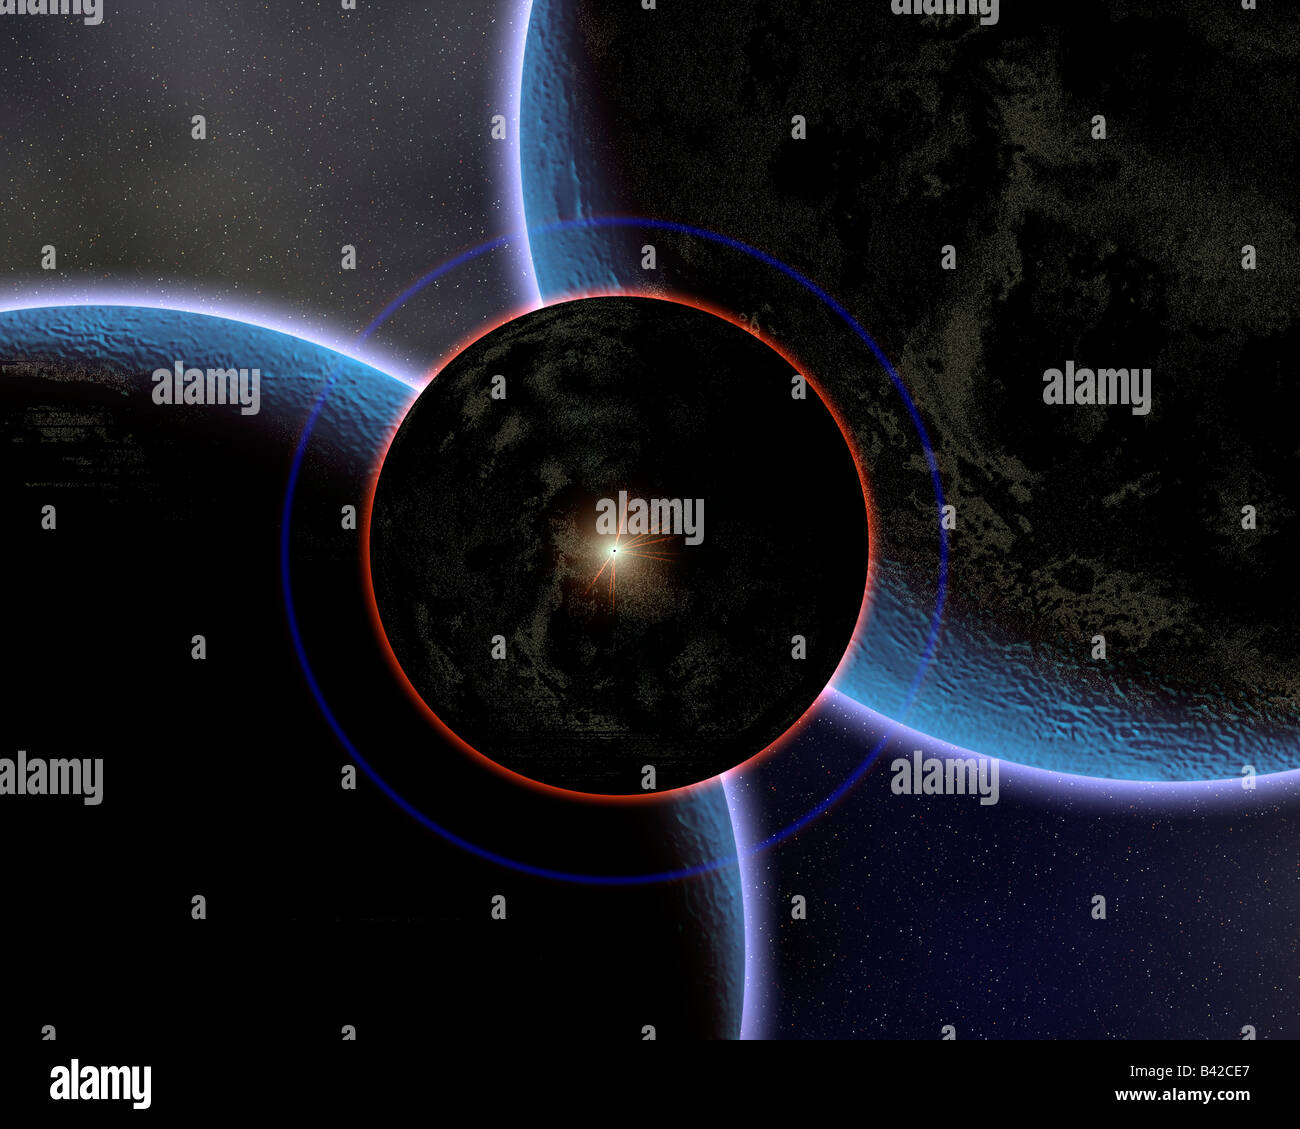 Une image conceptuelle d'un Star Portal, un passage à des régions éloignées de la Galaxie. Banque D'Images